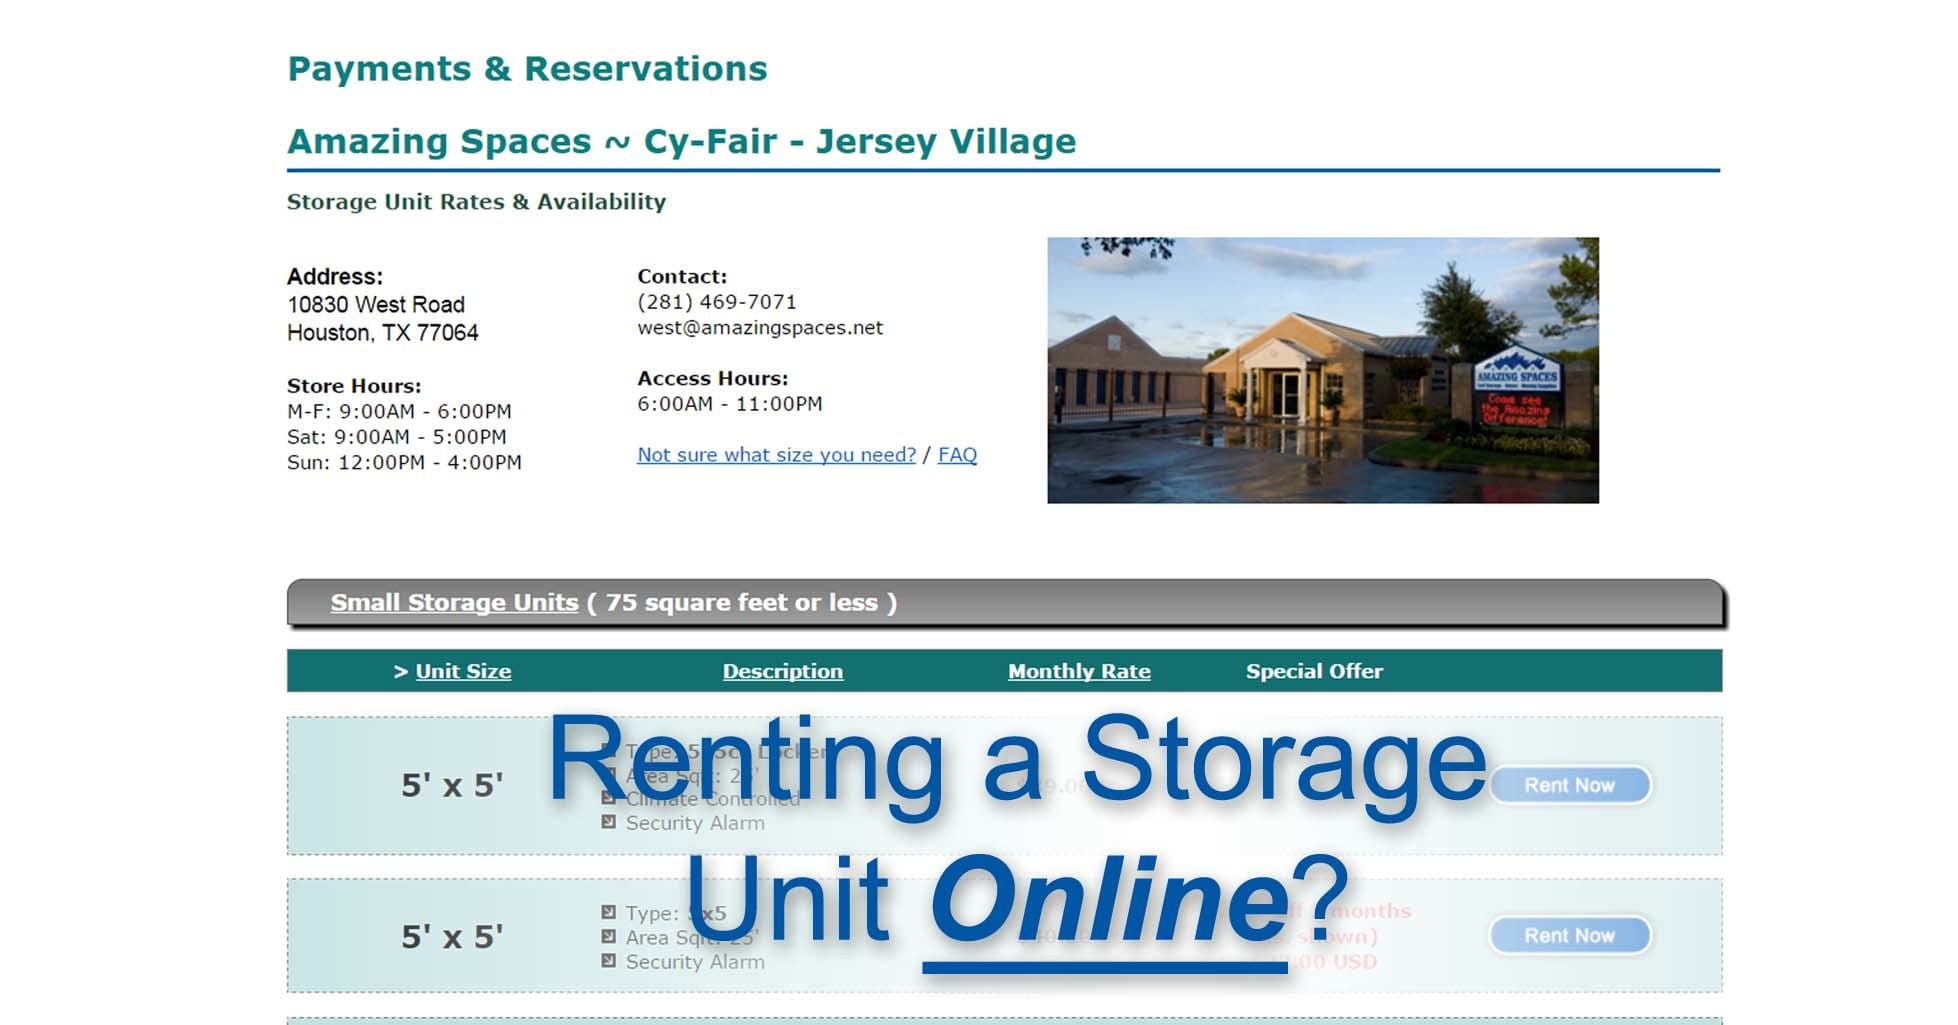 Renting Unit Online